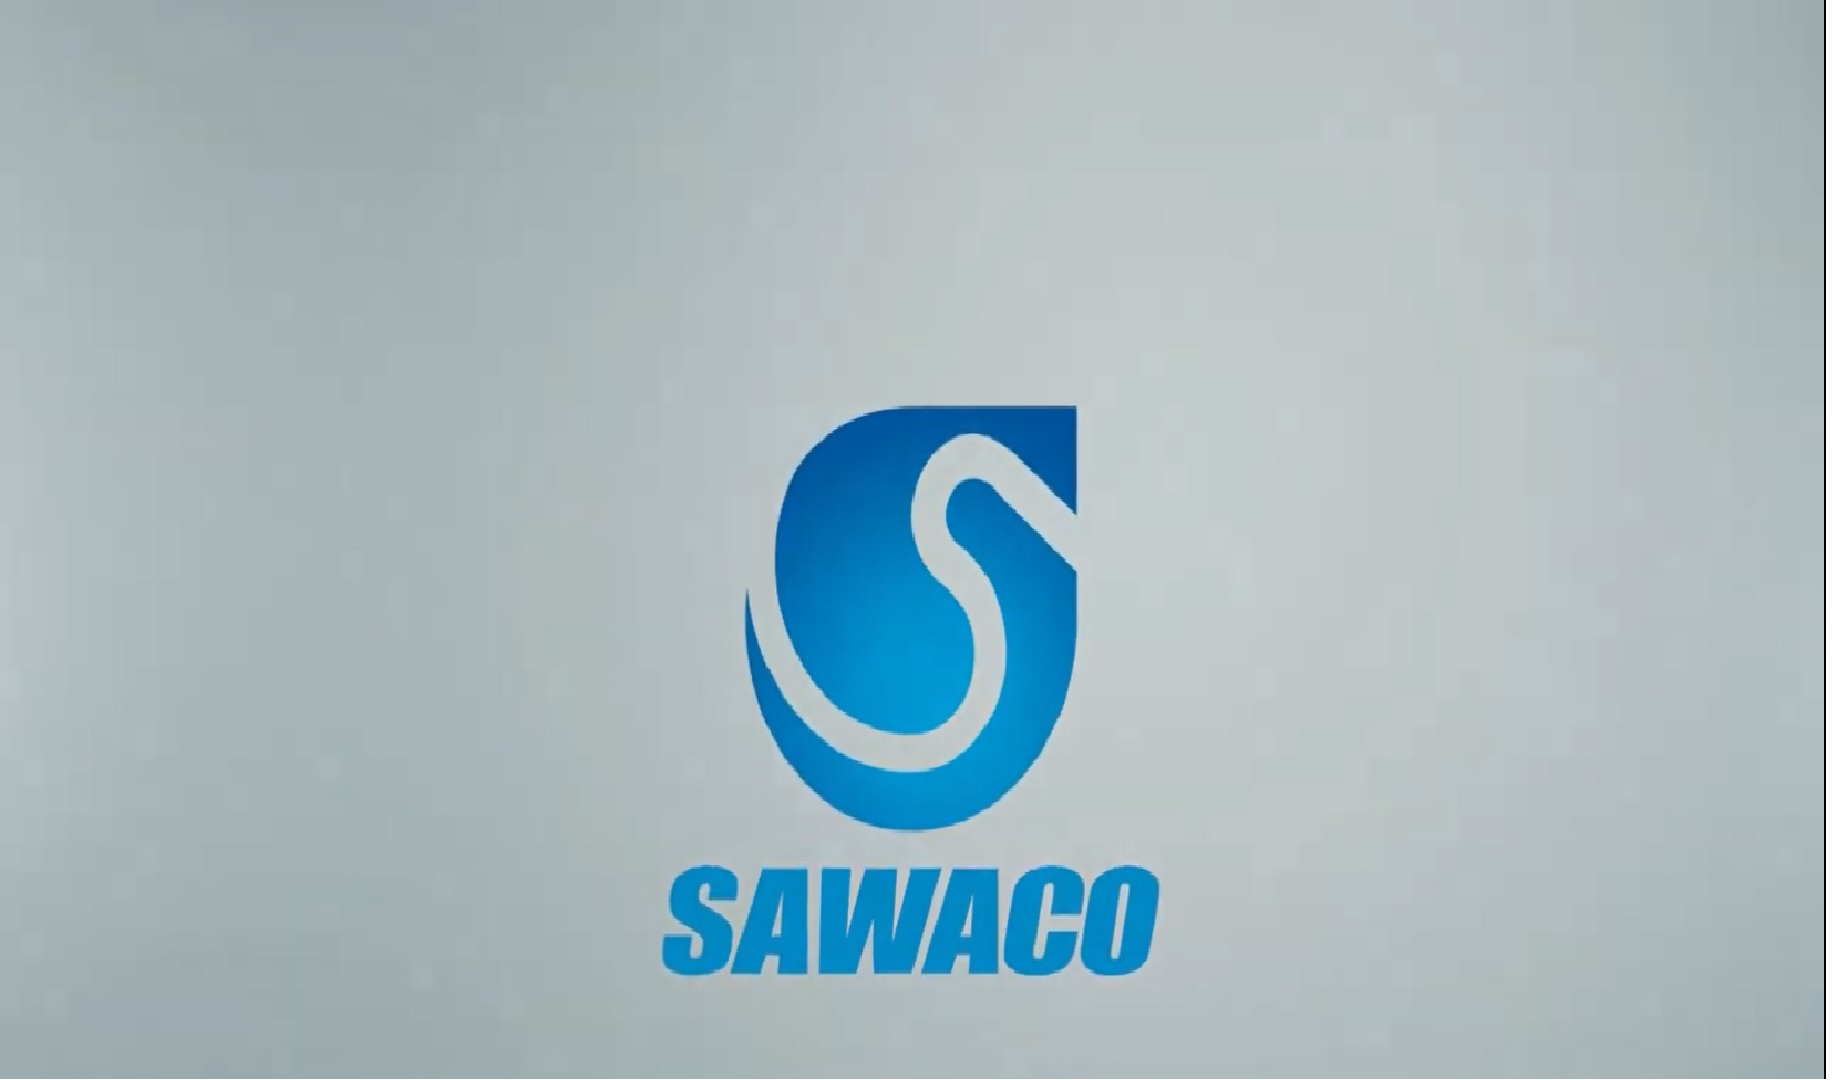 SAWACO Cách kiểm tra rò rỉ nước sau ĐHN Khách hàng